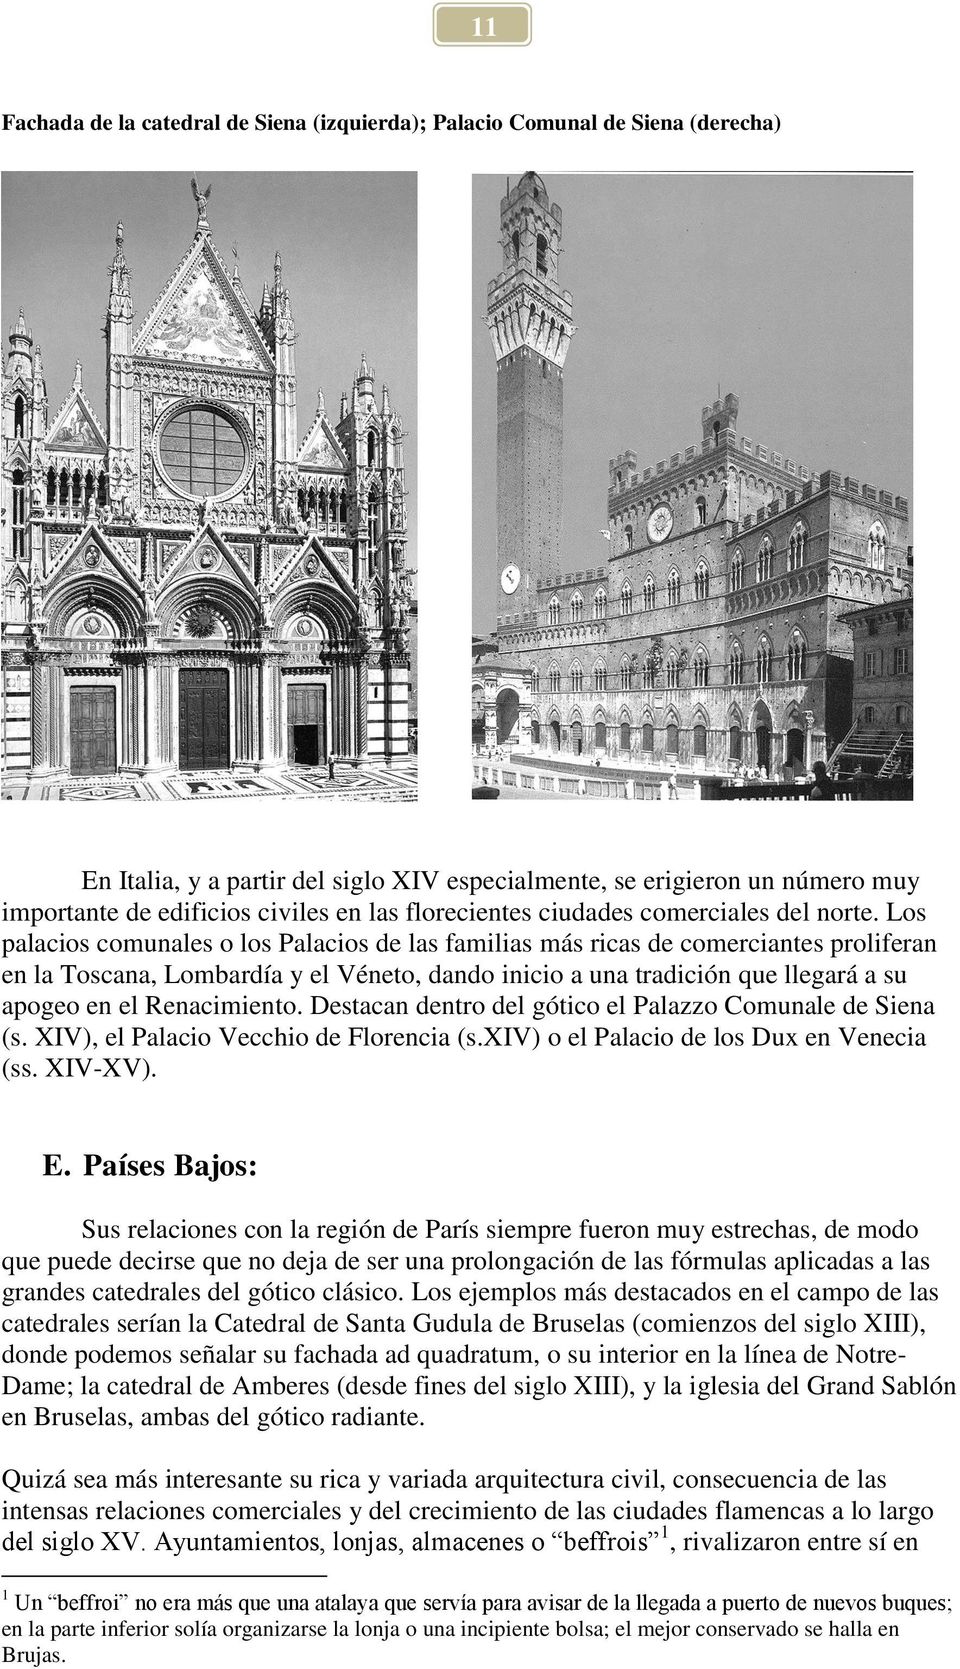 Los palacios comunales o los Palacios de las familias más ricas de comerciantes proliferan en la Toscana, Lombardía y el Véneto, dando inicio a una tradición que llegará a su apogeo en el